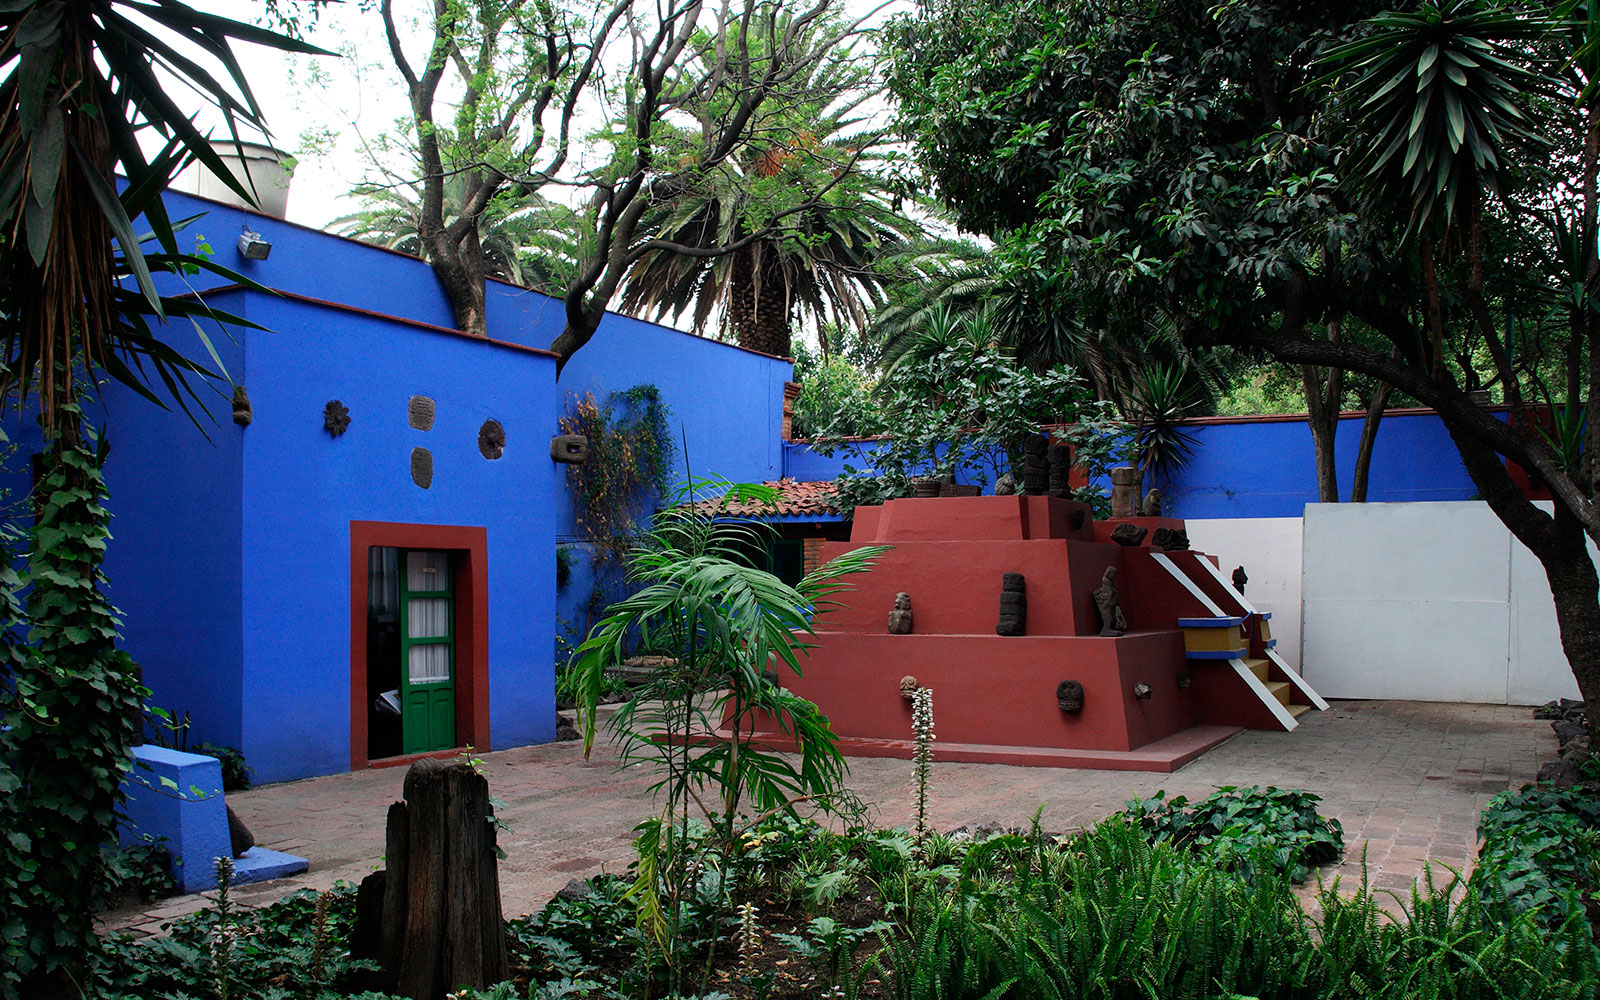 Mexico, Mexico City, CoyoacÃÂ¡n. The Museo Frida Kahlo, a gallery of artwork by the Mexican painter Frida Kahlo in the house where she was born and spent most of her life.